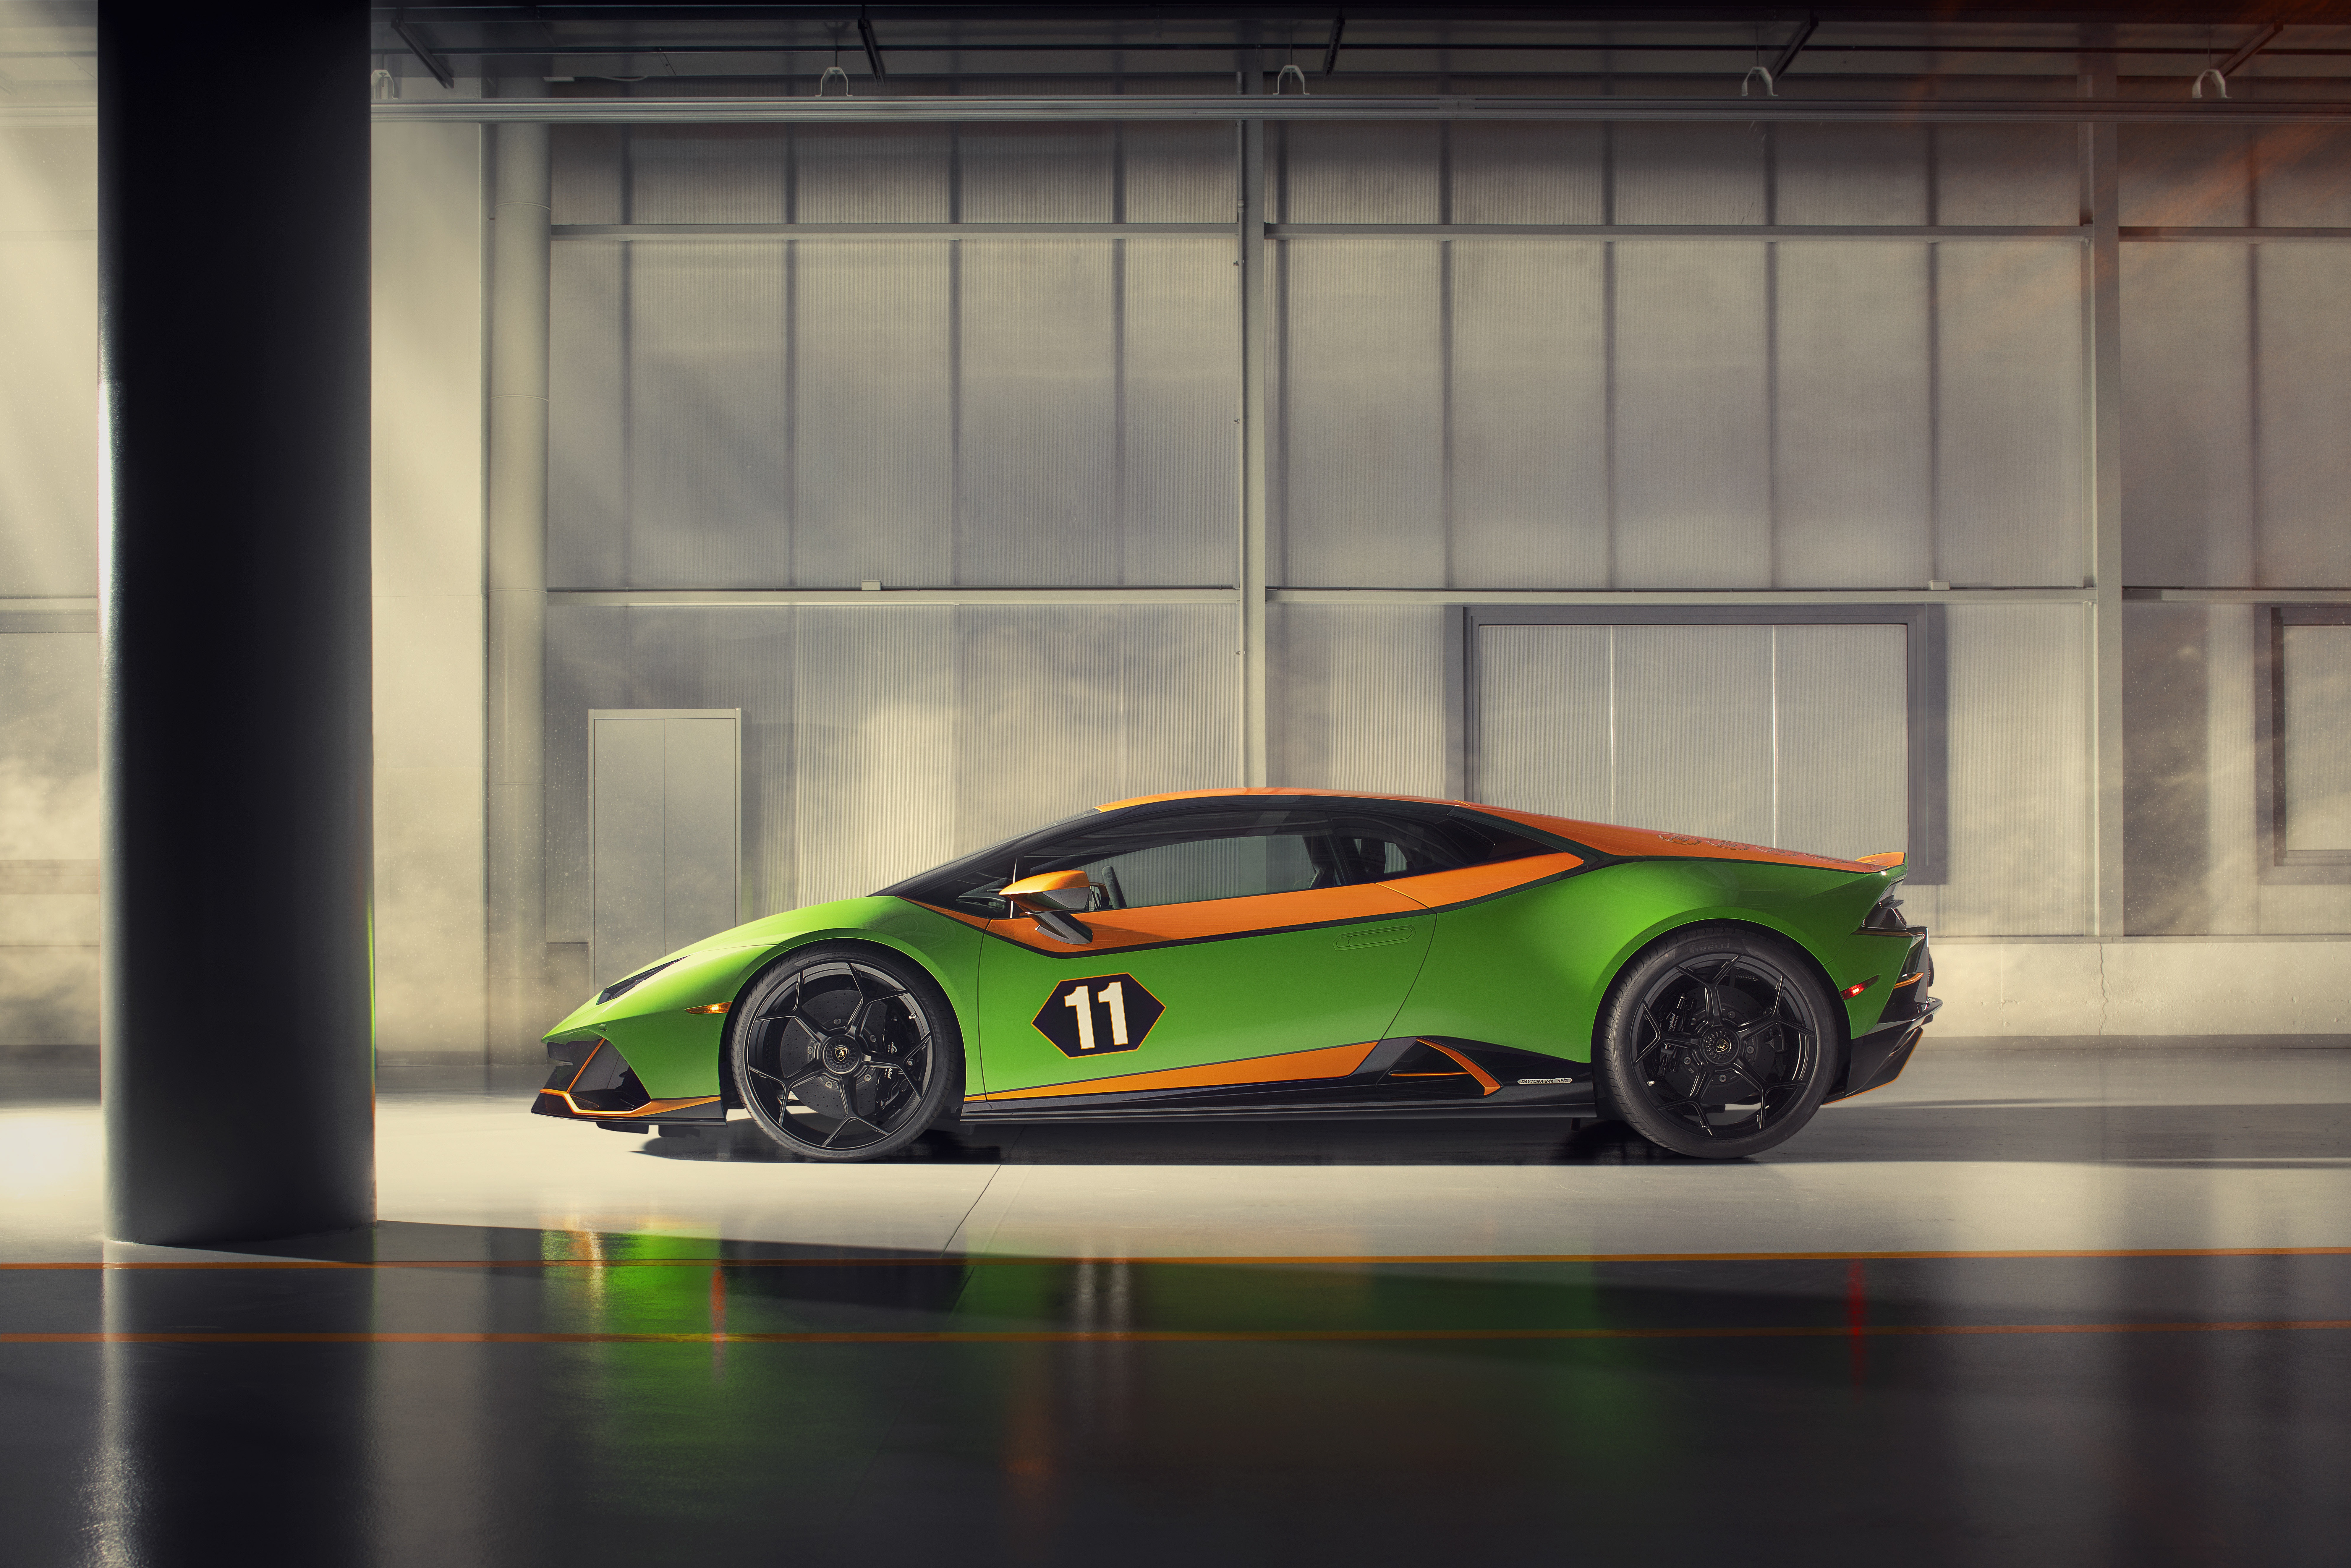 Descargar fondos de escritorio de Lamborghini Huracán Evo Gt Celebración HD